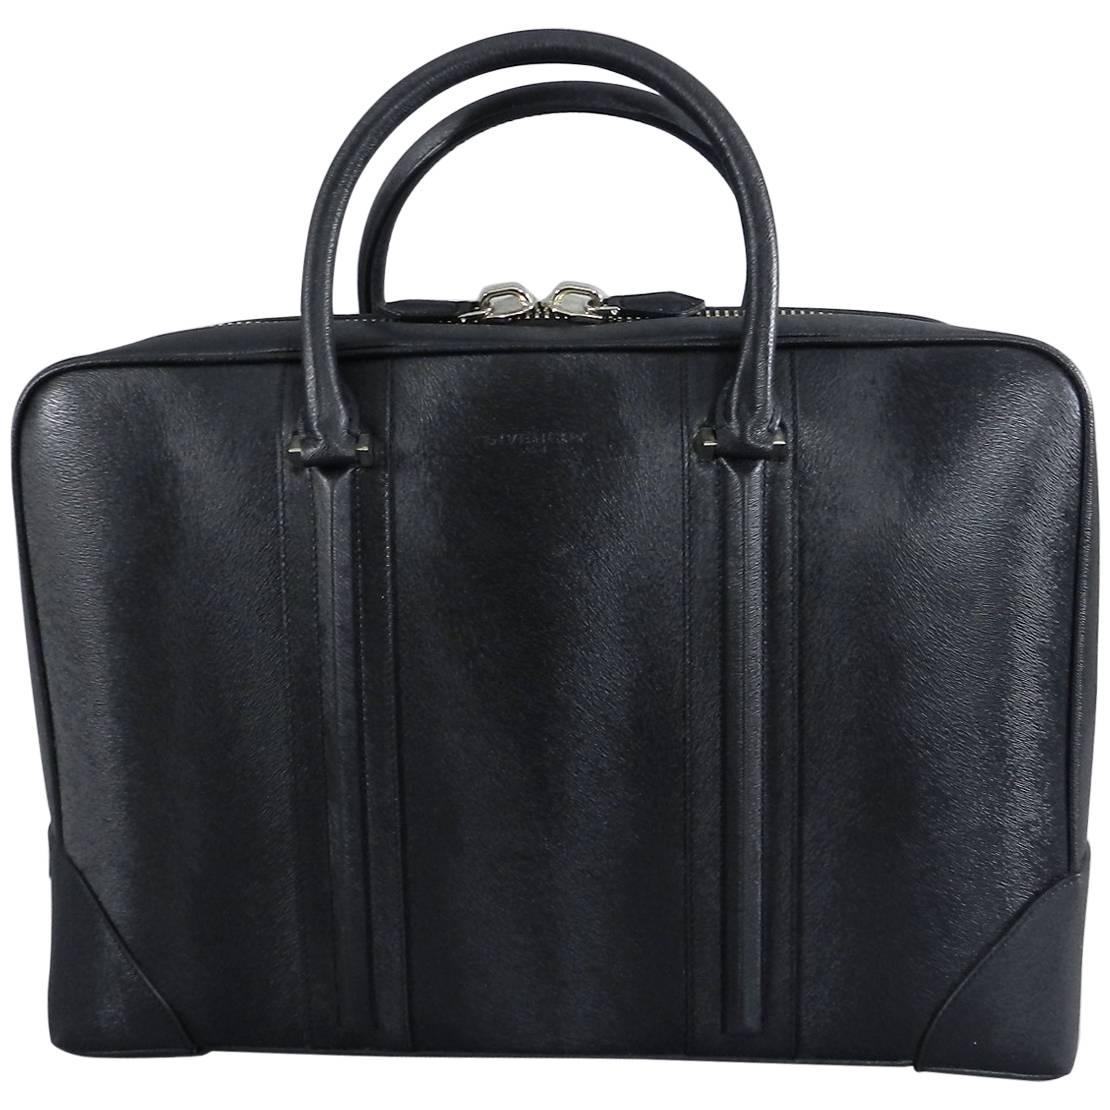 Givenchy Lucrezia Textured Calf Black Briefcase / Computer Bag